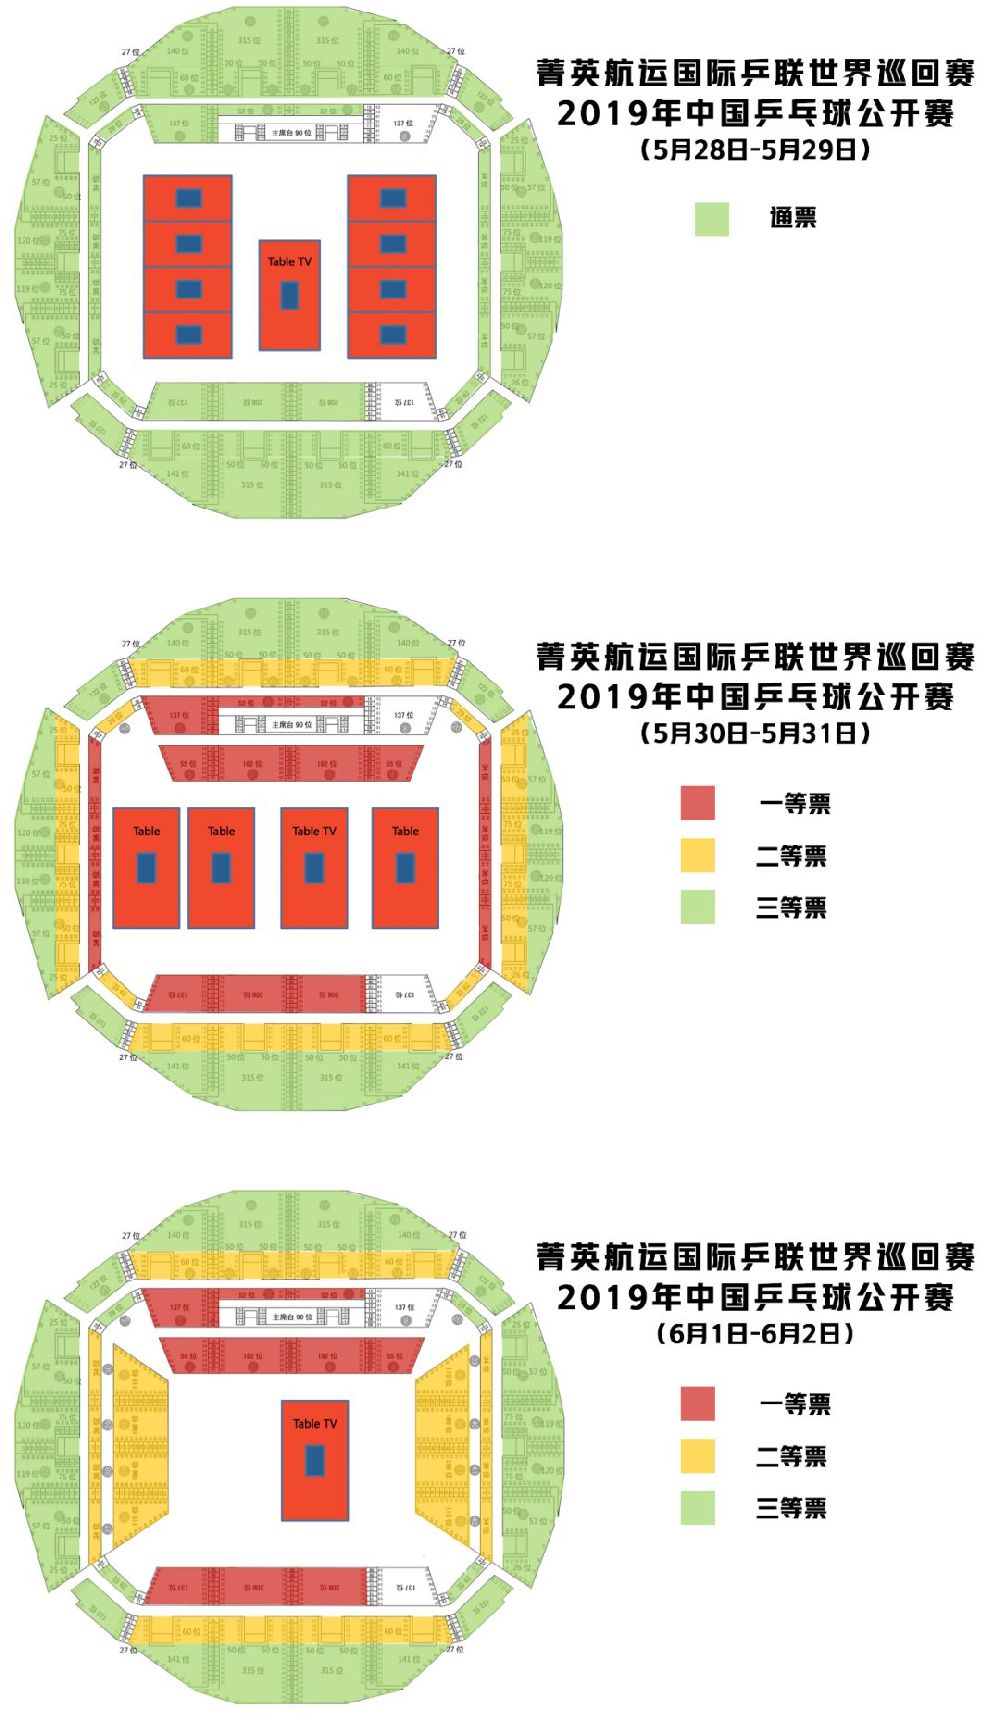 2020年中国乒乓球公开赛深圳站时间地点门票及阵容